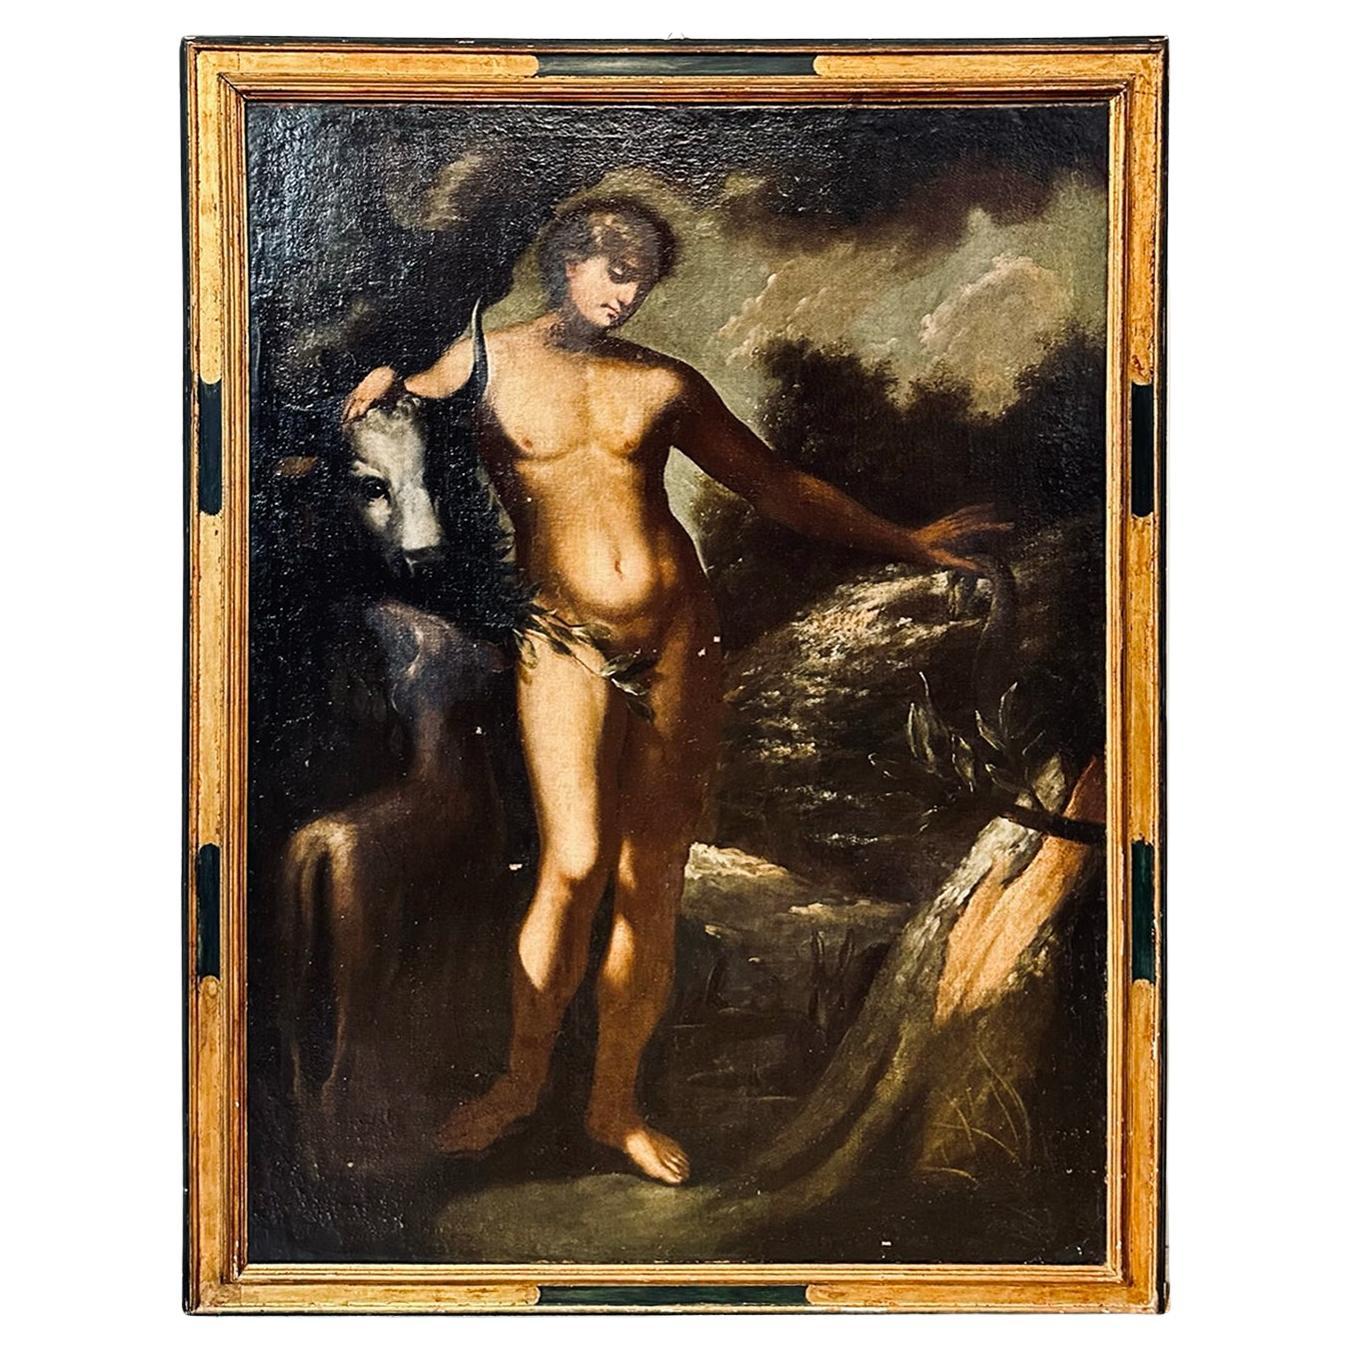 Gemälde aus dem frühen 18. Jahrhundert, das Adam darstellt - Römische Schule